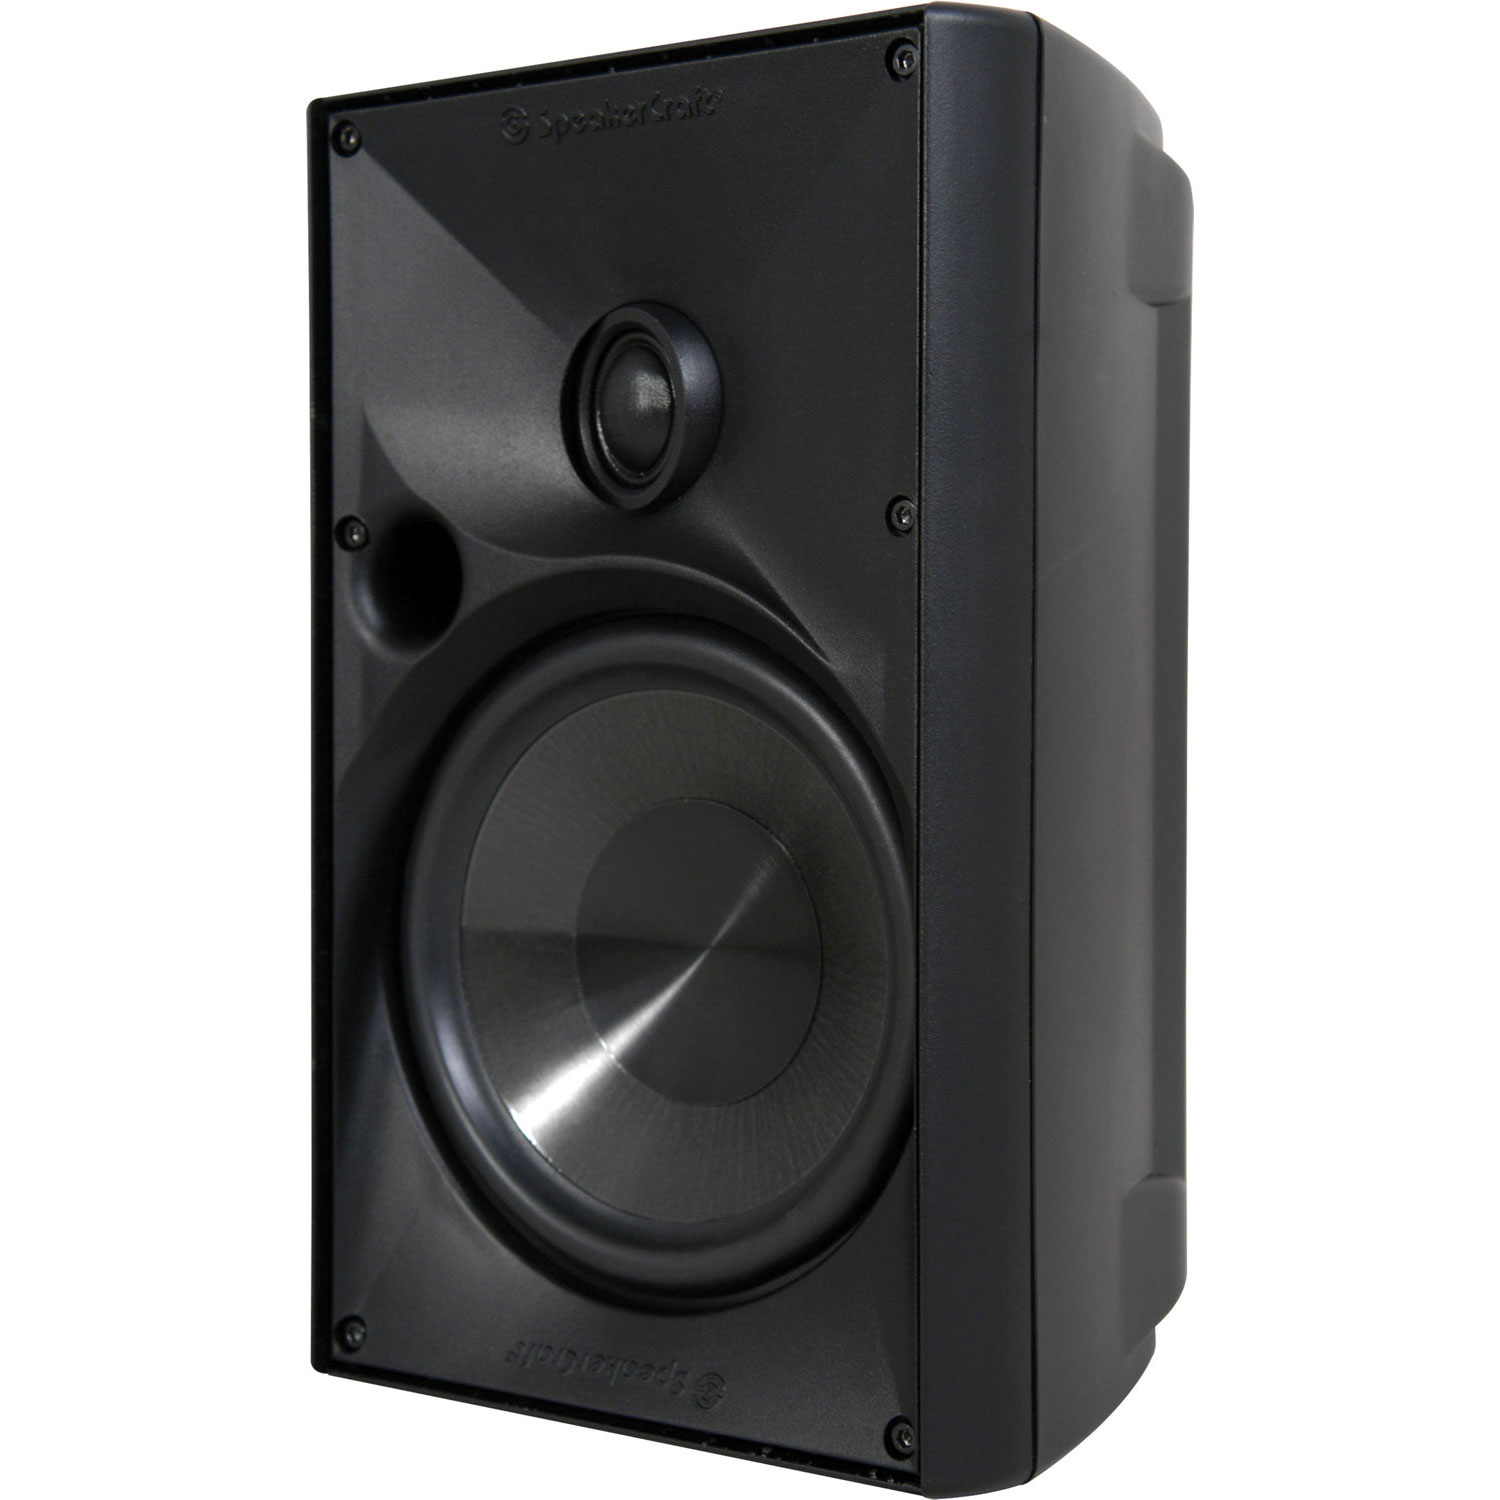 Speakercraft OE6 ONE BLACK INDOOR/OUTDOOR SPEAKER ASM80616